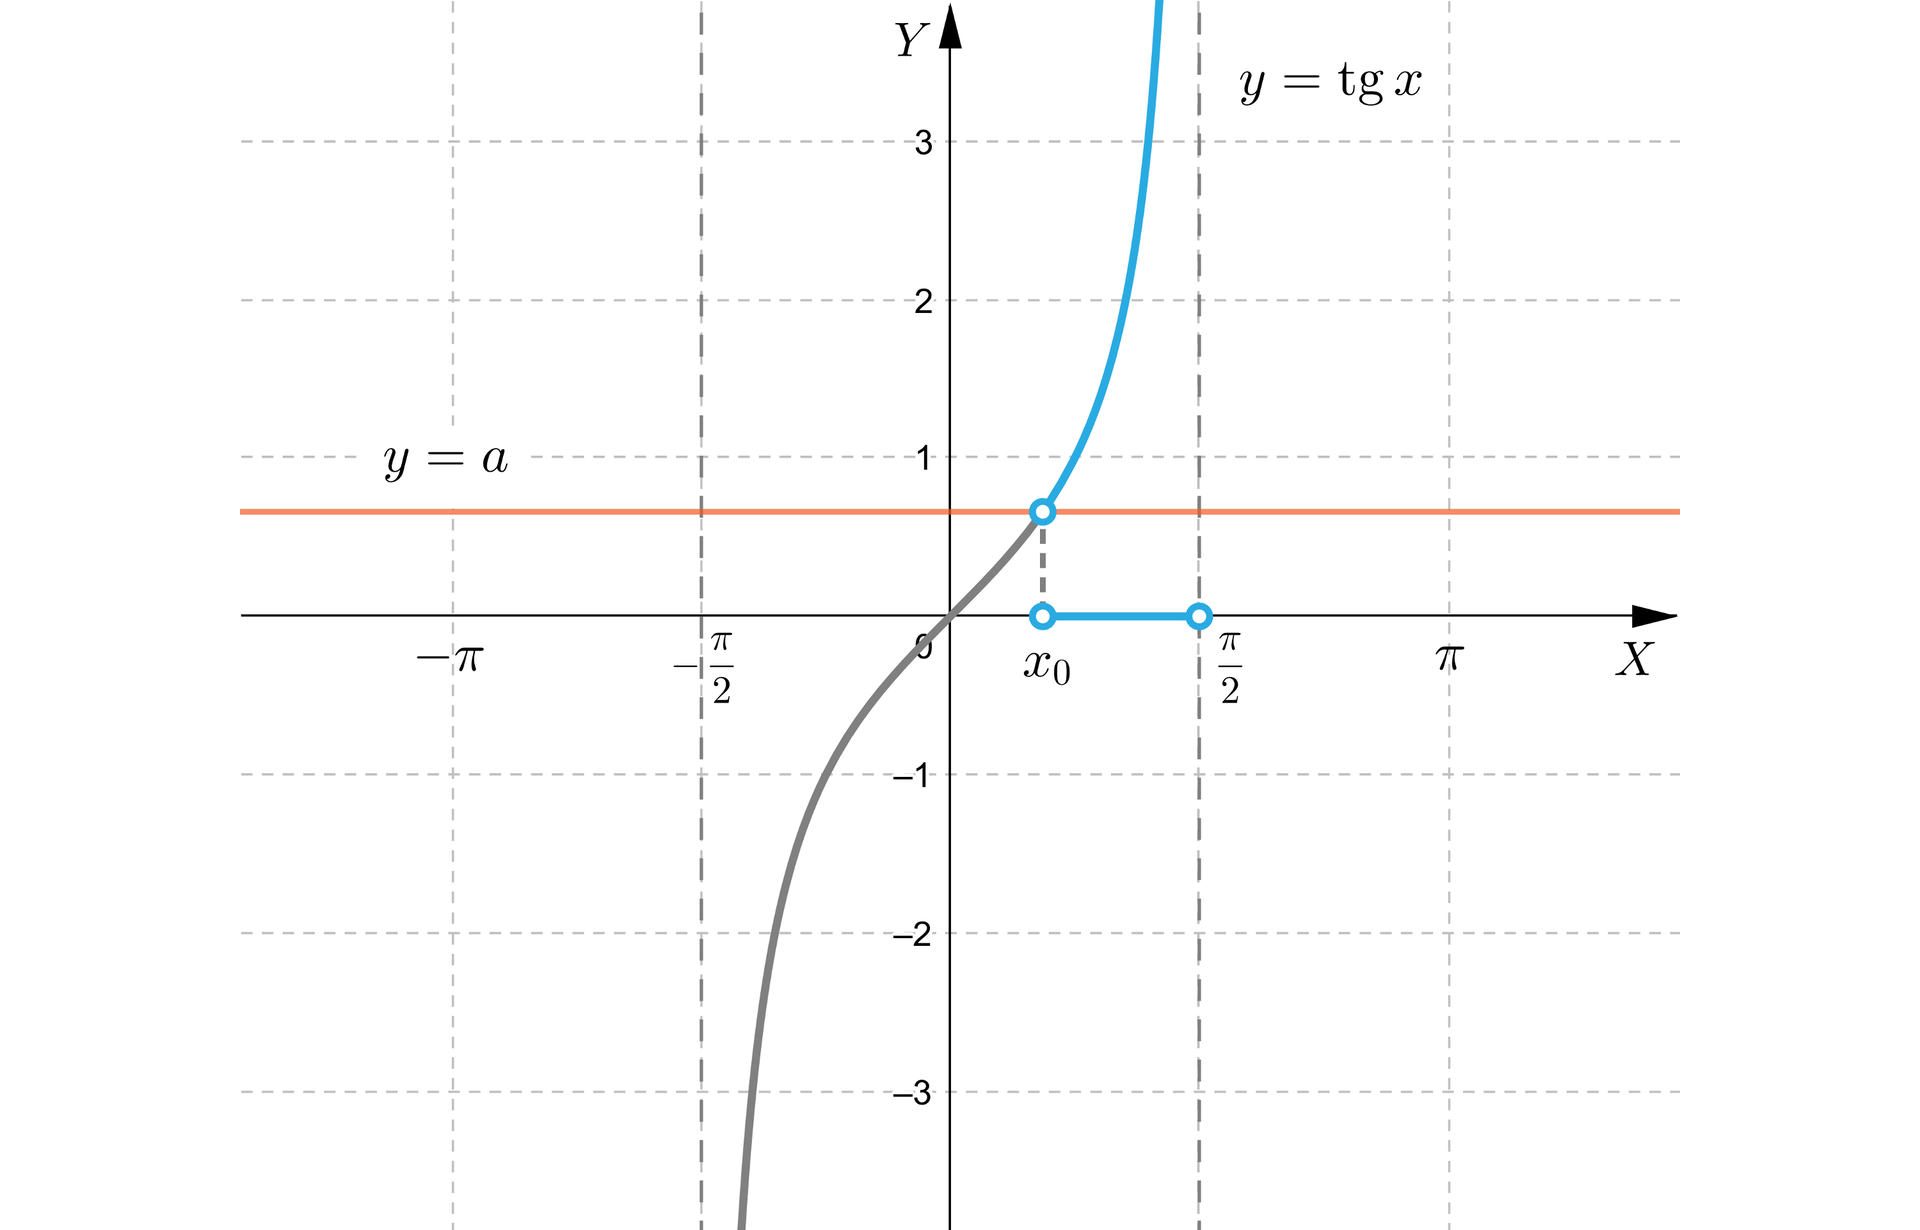 Rysunek przedstawia układ współrzędnych z poziomą osią X od minus pi do pi oraz z pionową osią Y od minus trzech do trzech. Na płaszczyźnie narysowany jest wykres funkcji tangens x na dziedzinie -π2;π2. Na płaszczyźnie zaznaczone są trzy niezamalowane punkty. Punkt o współrzędnych π2;0, punkt o współrzędnych x0;0, przy czym x0 jest mniejsze od liczby π2. Punkty te połączone są linią i tworzą odcinek obustronnie otwarty. Na płaszczyźnie narysowano również poziomą prostą opisaną wzorem y=a, przy czym a jest liczbą mniejszą od 1. Trzecim wyróżnionym punktem jest punkt przecięcia prostej z wykresem funkcji tangens. Fragment wykresu funkcji tangens od punktu przecięcia z prostą do plus nieskończoności jest pogrubiony.